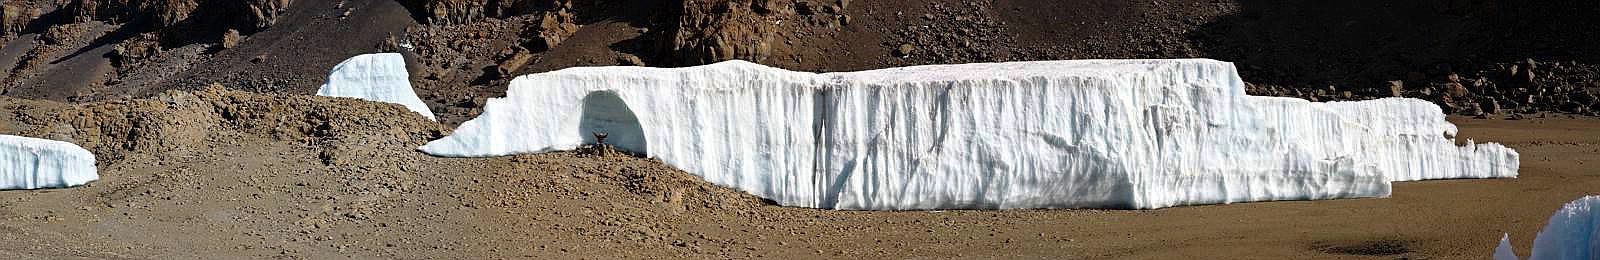 Das Südsegment des geteilten Furtwängler Gletscher in der Kibo-Kaldera im Jahr 2014 mit Eisgrotte und Person vor der Eisgrotte zum Größenvergleich